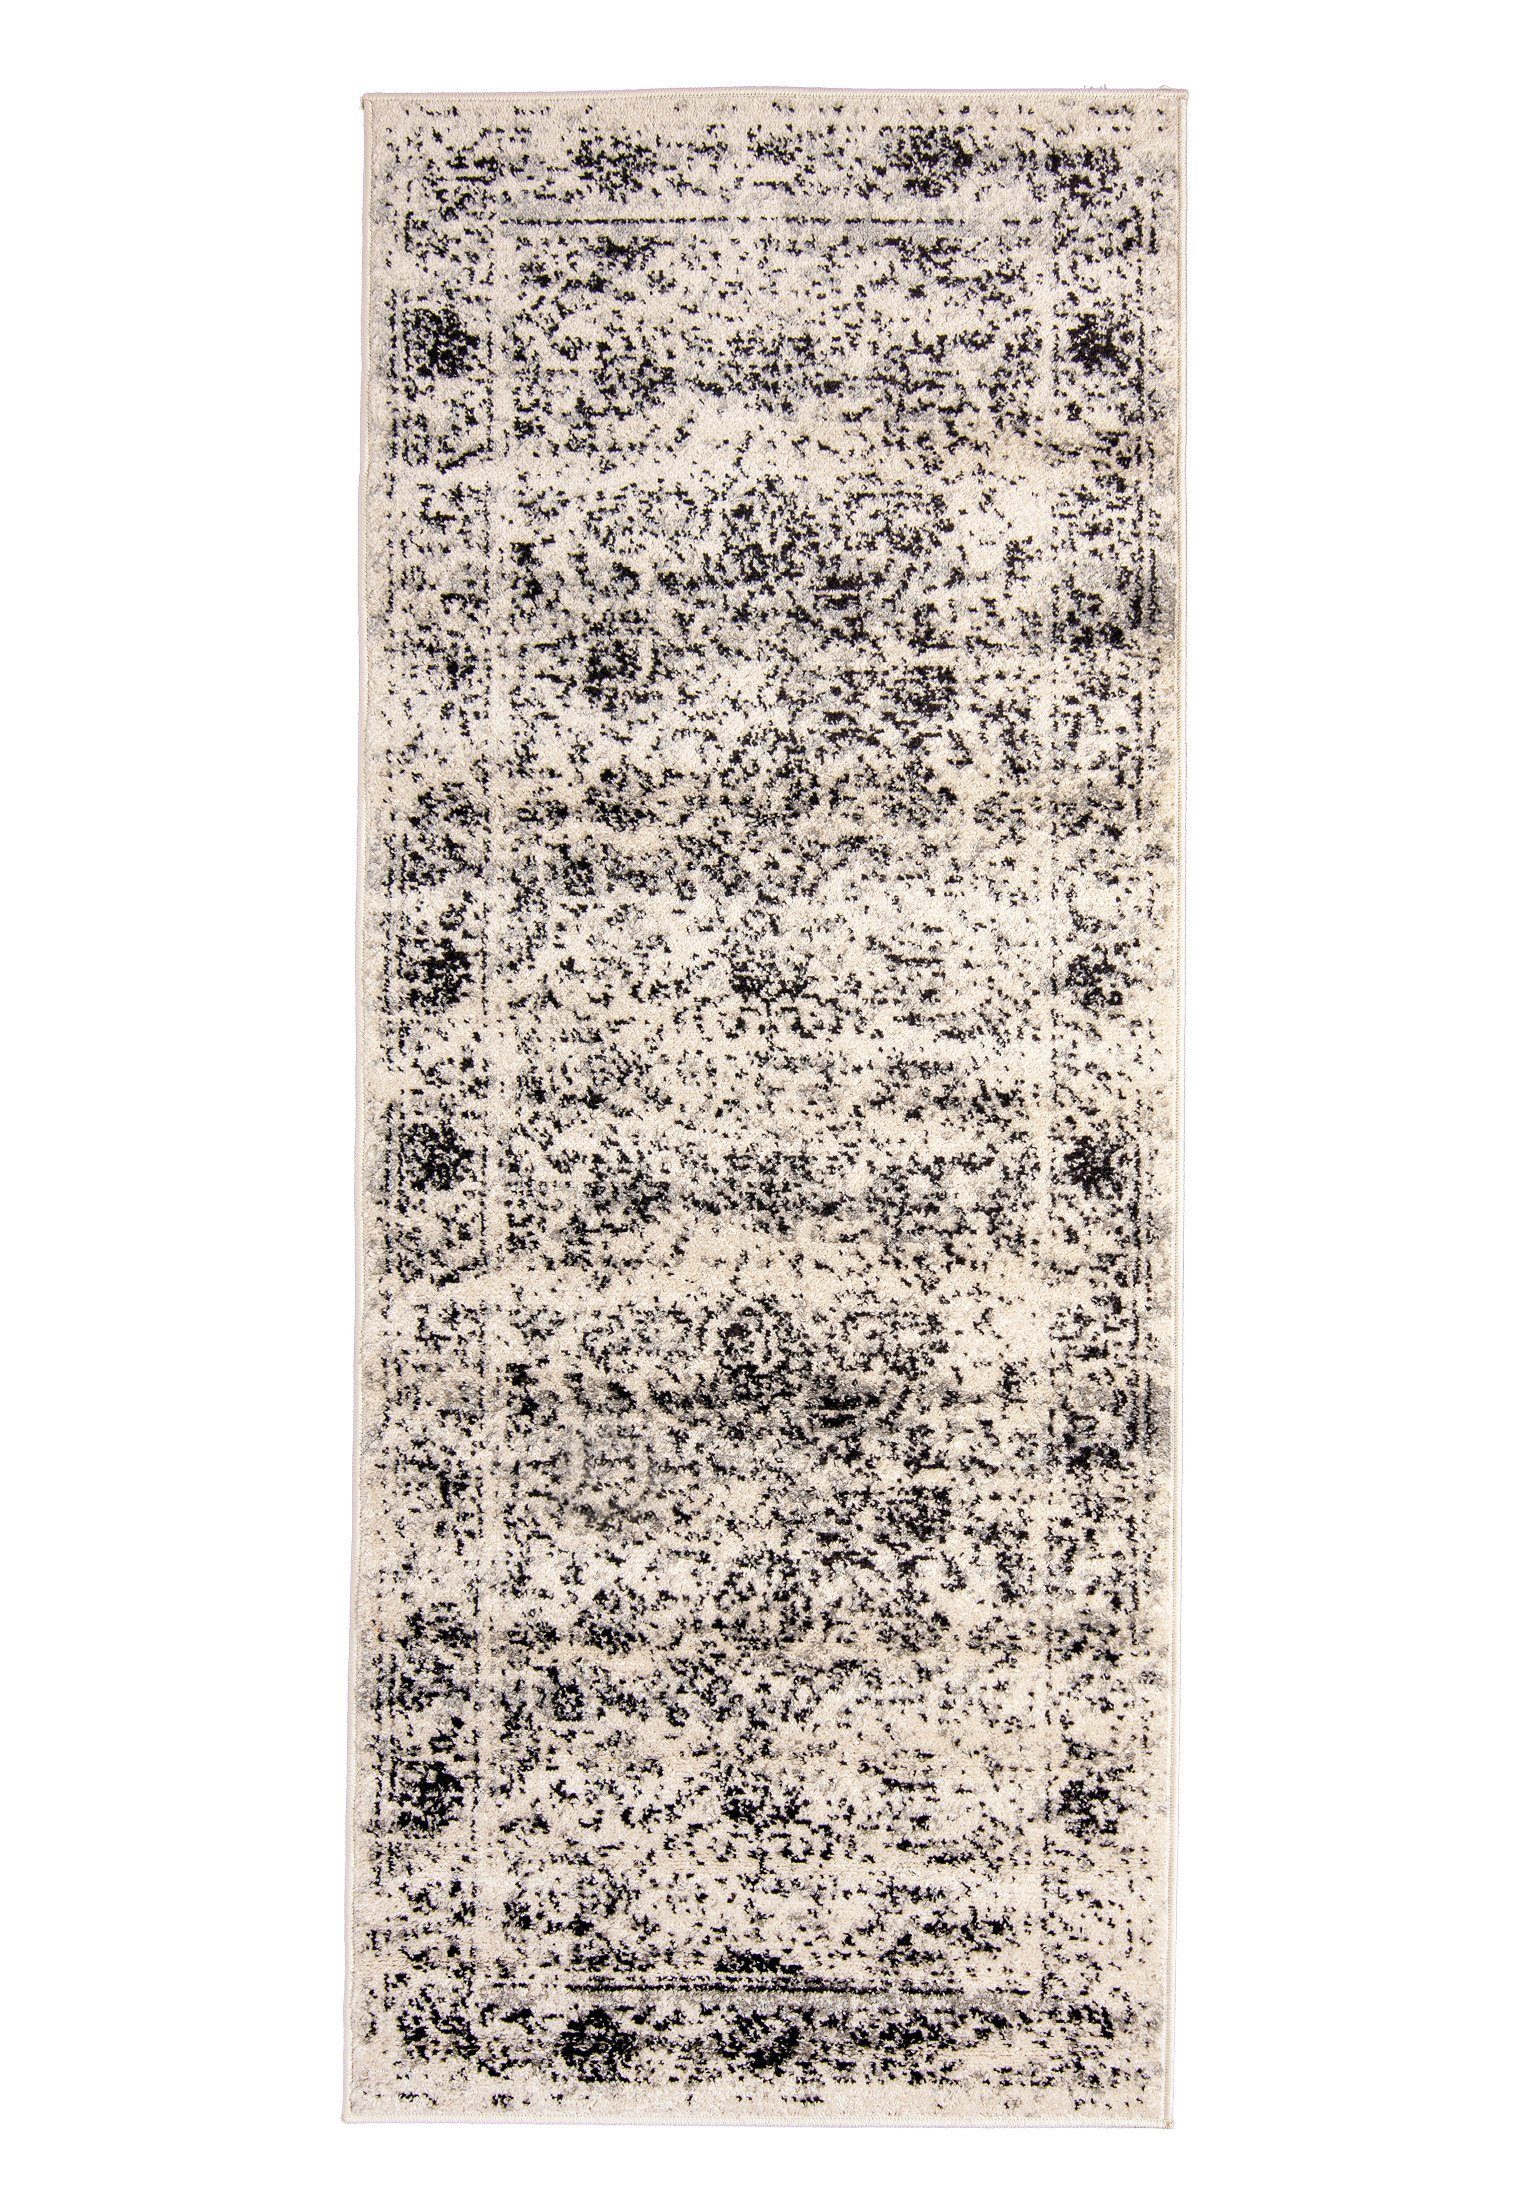 Designteppich Vintage Teppich für Wohnzimmer - Vintage Look - Grau, Mazovia, 60 x 200 cm, Vintage, Höhe 8 mm, Kurzflor - niedrige Florhöhe Grau / H182A